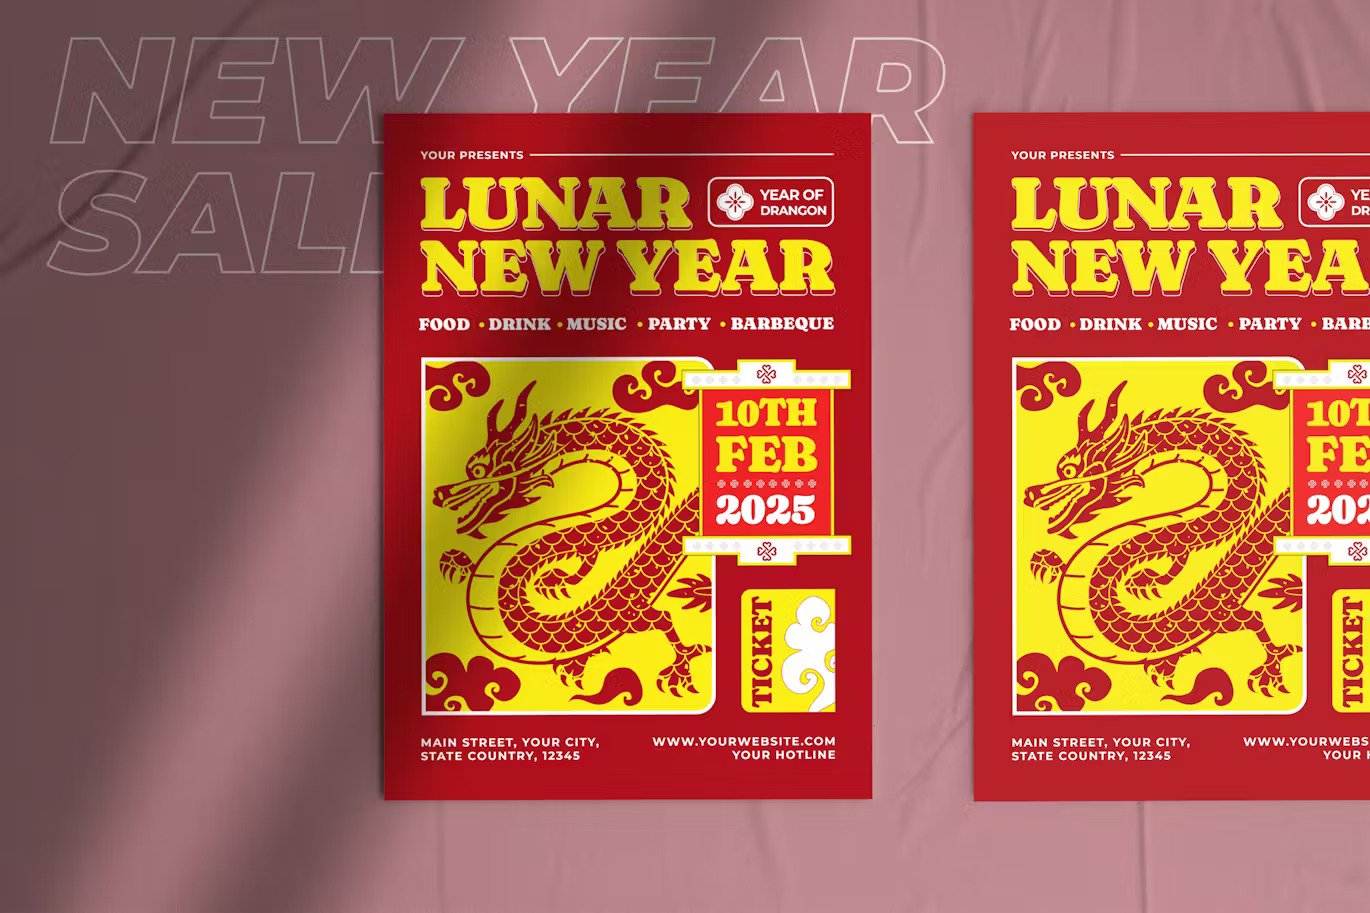 A lunar new year flyer